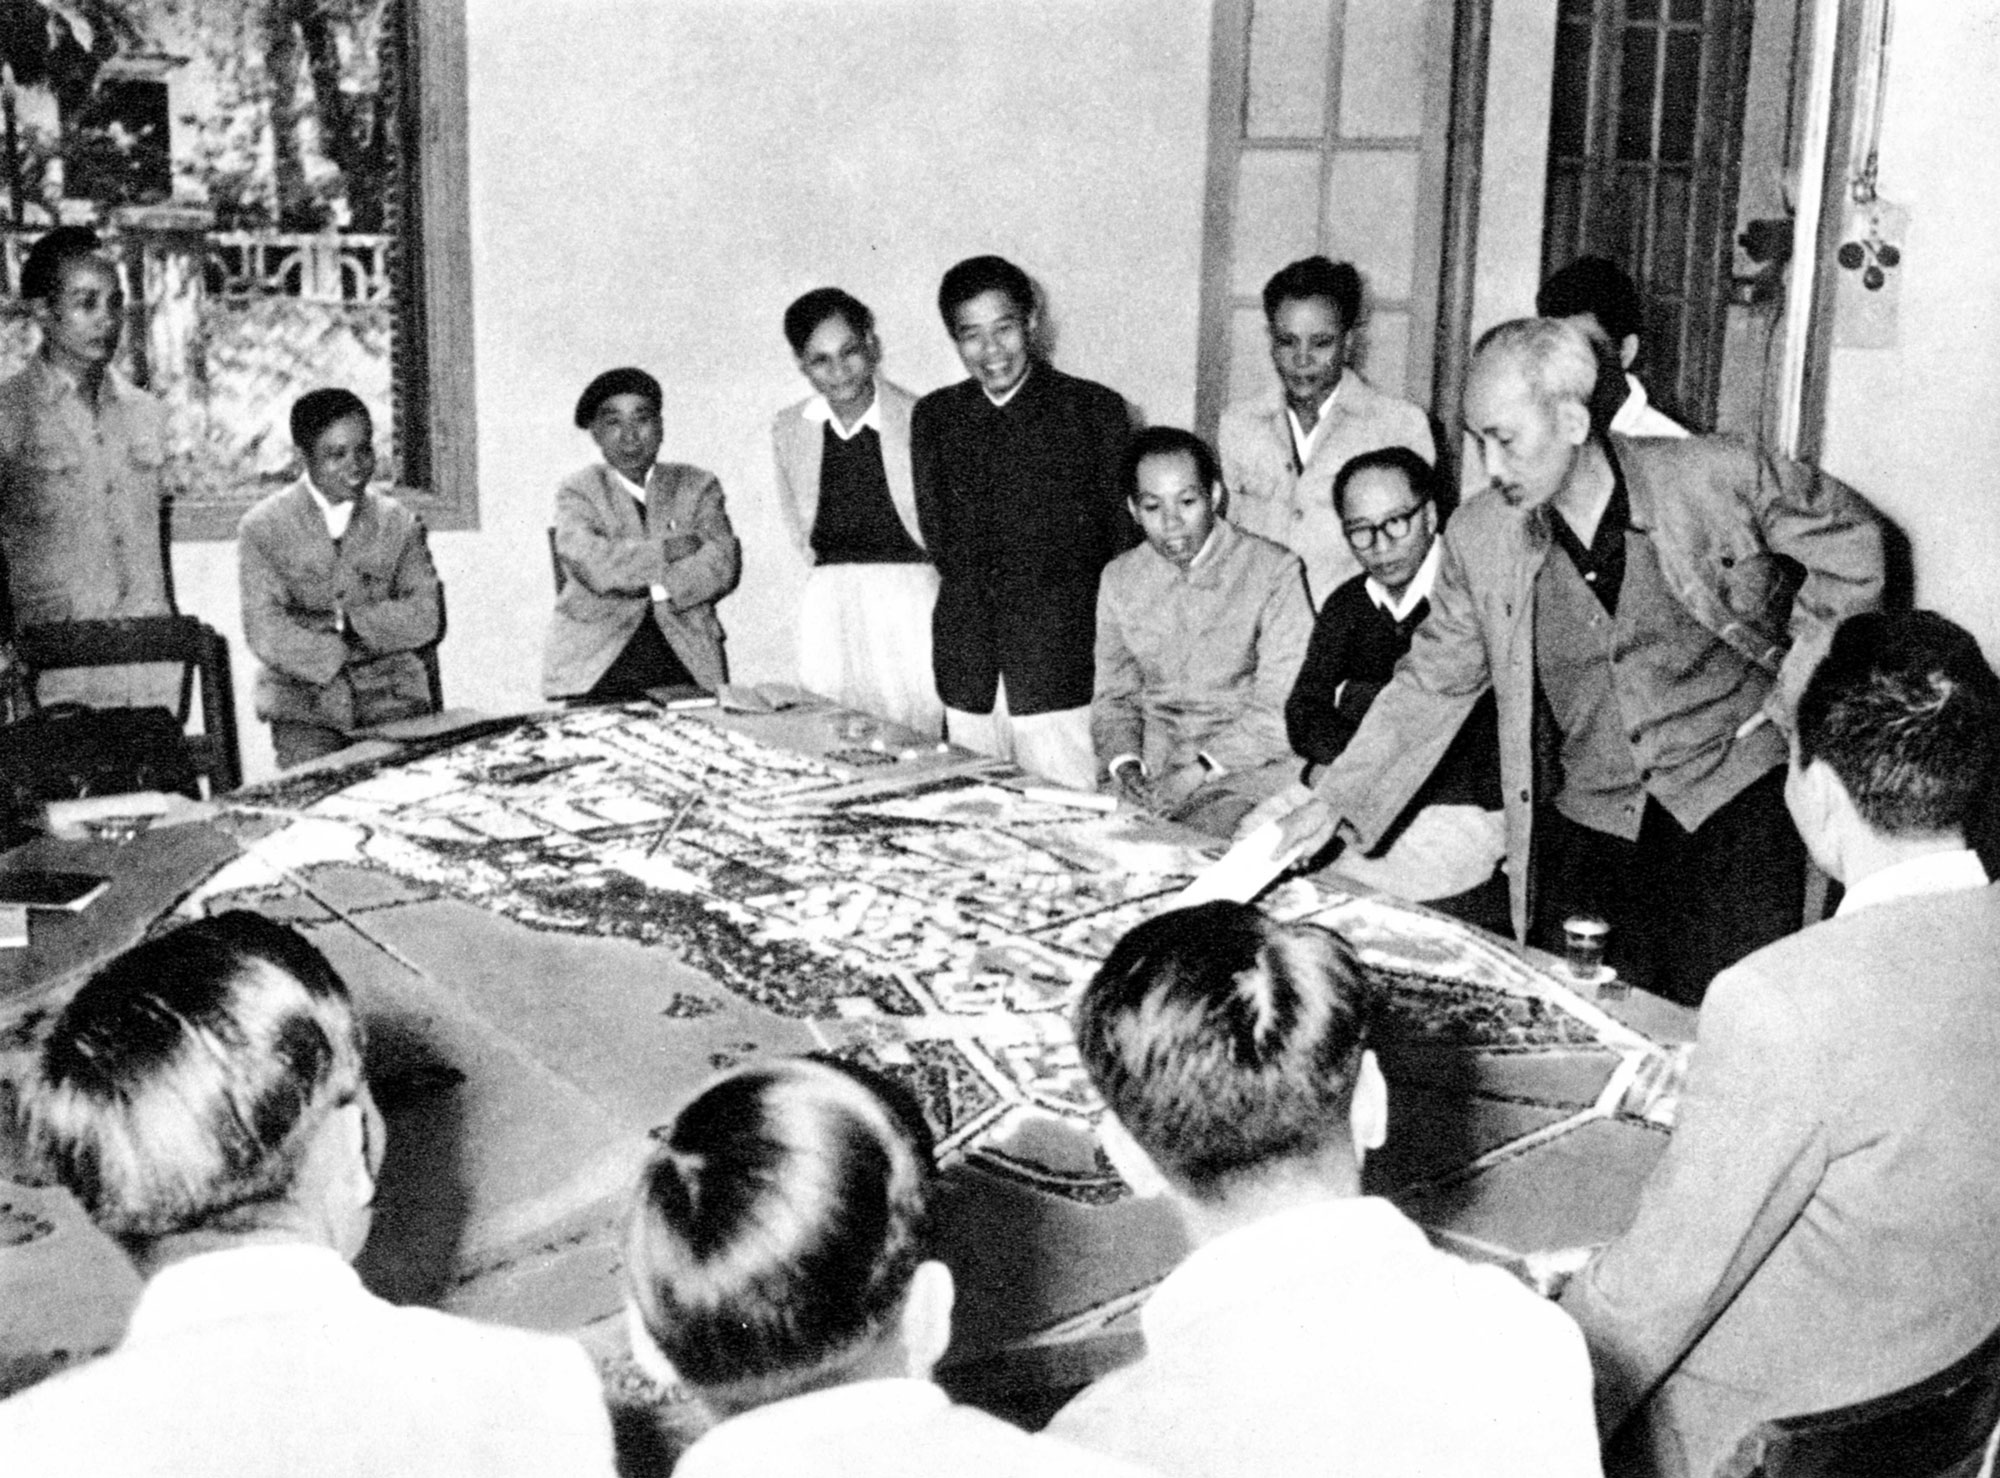 Tư tưởng Hồ Chí Minh với sự nghiệp đổi mới và phát triển, xây dựng Thủ đô Hà Nội ngày càng giàu đẹp, văn minh, hiện đại